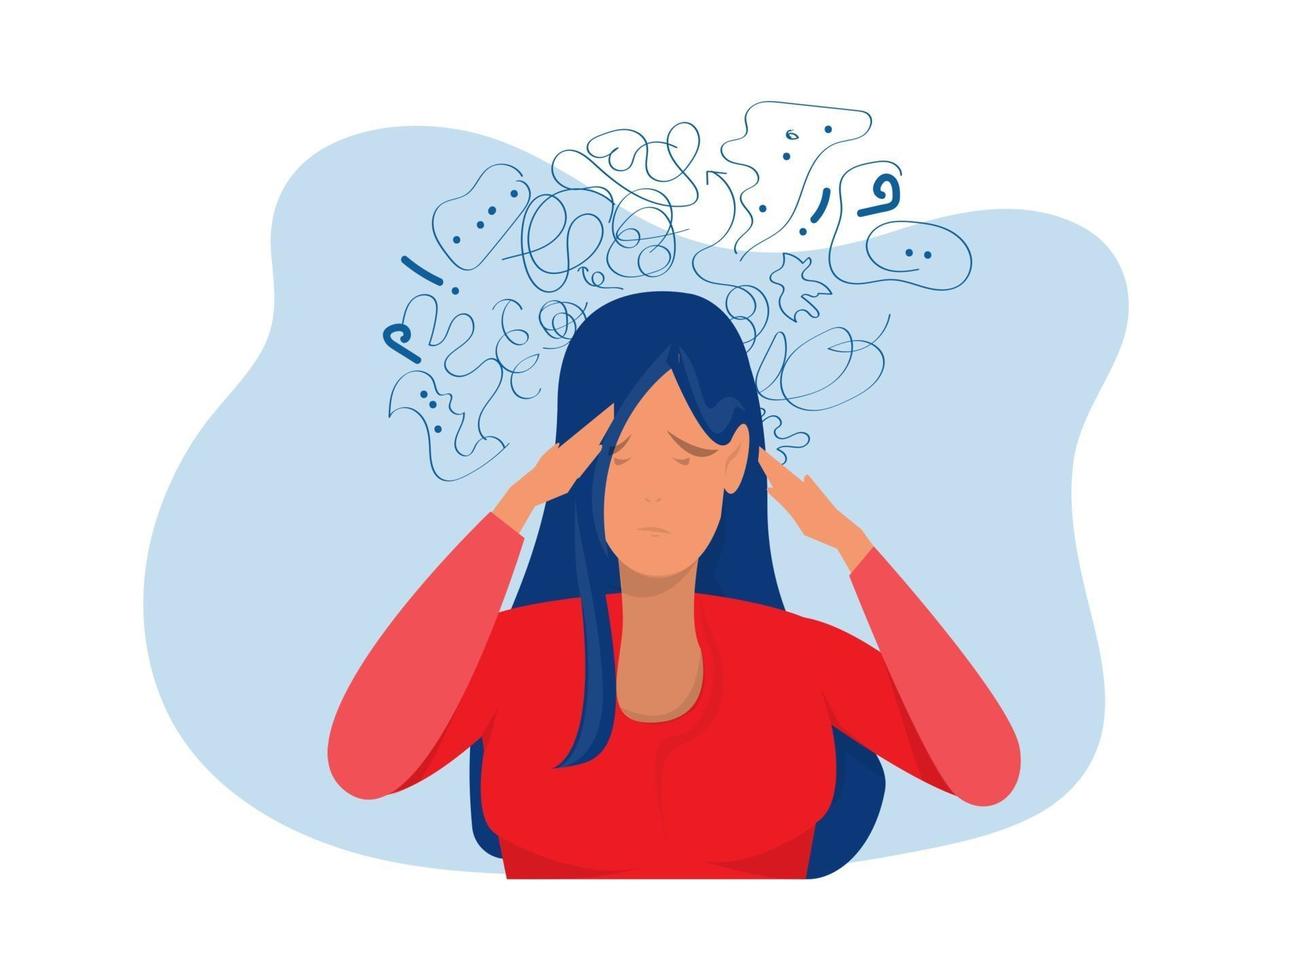 vrouw lijdt aan obsessieve gedachten hoofdpijn onopgeloste depressie vector